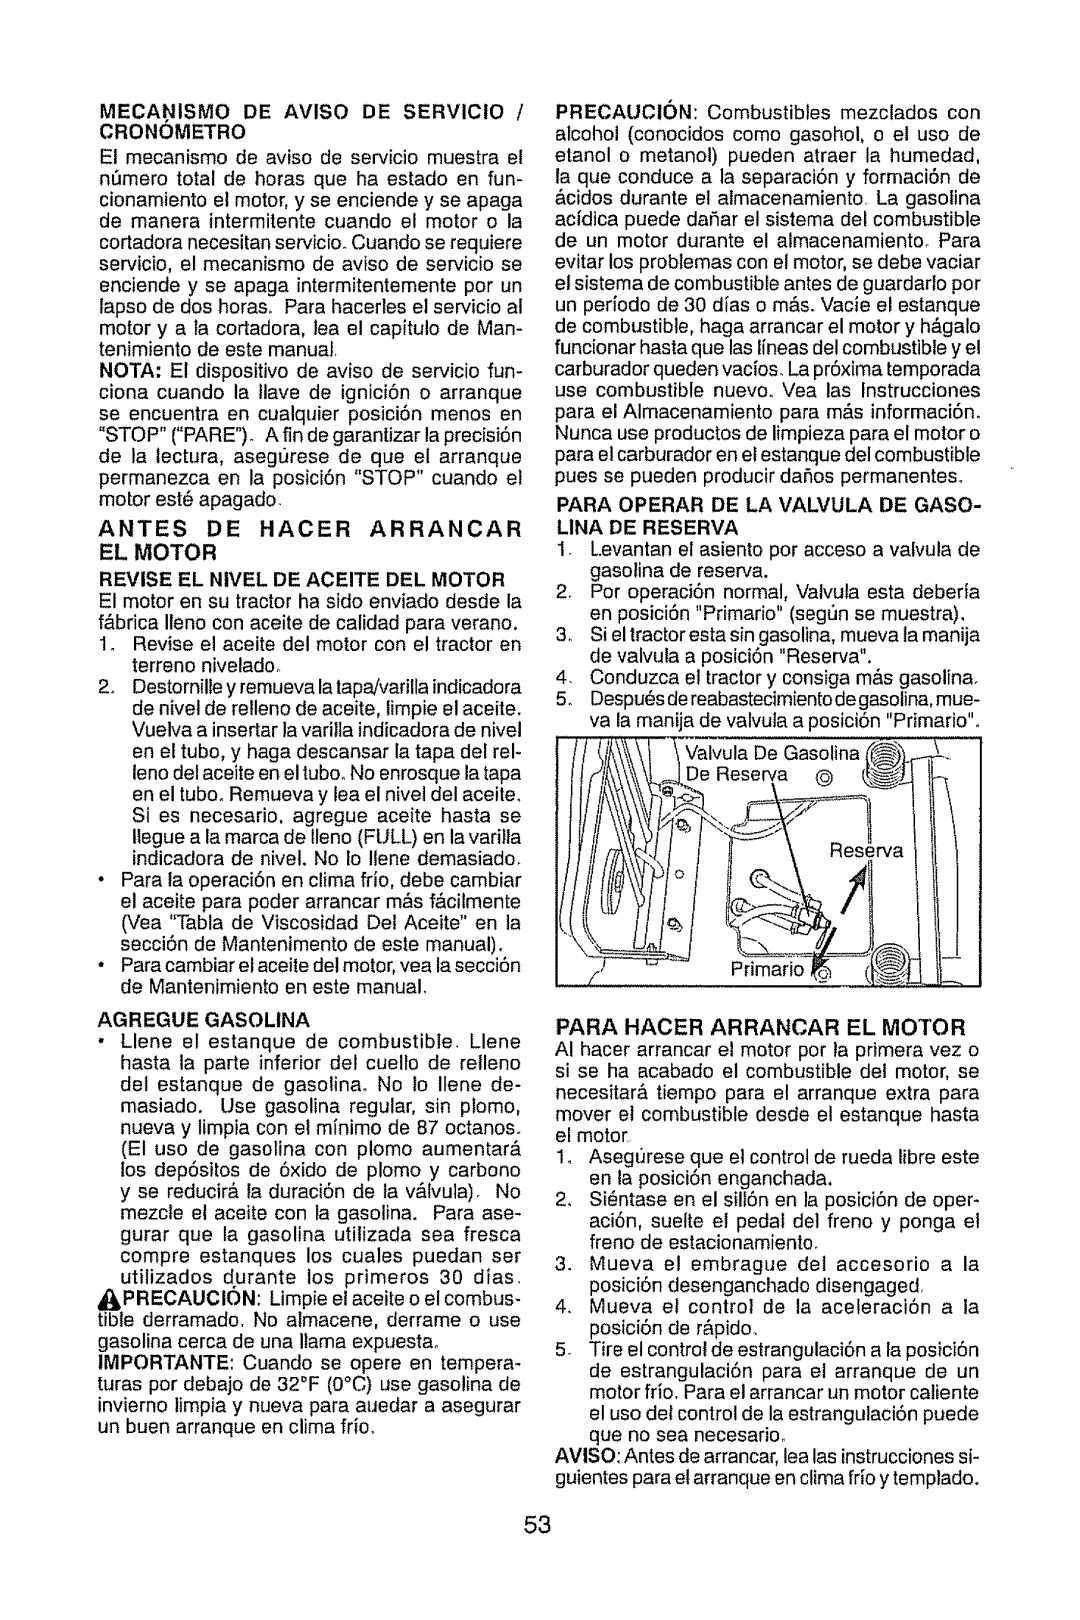 Craftsman 917.289470 manual MECAI;,IISMO DE AVISO DE SERVICiO, El Motor, Lina De Reserva 